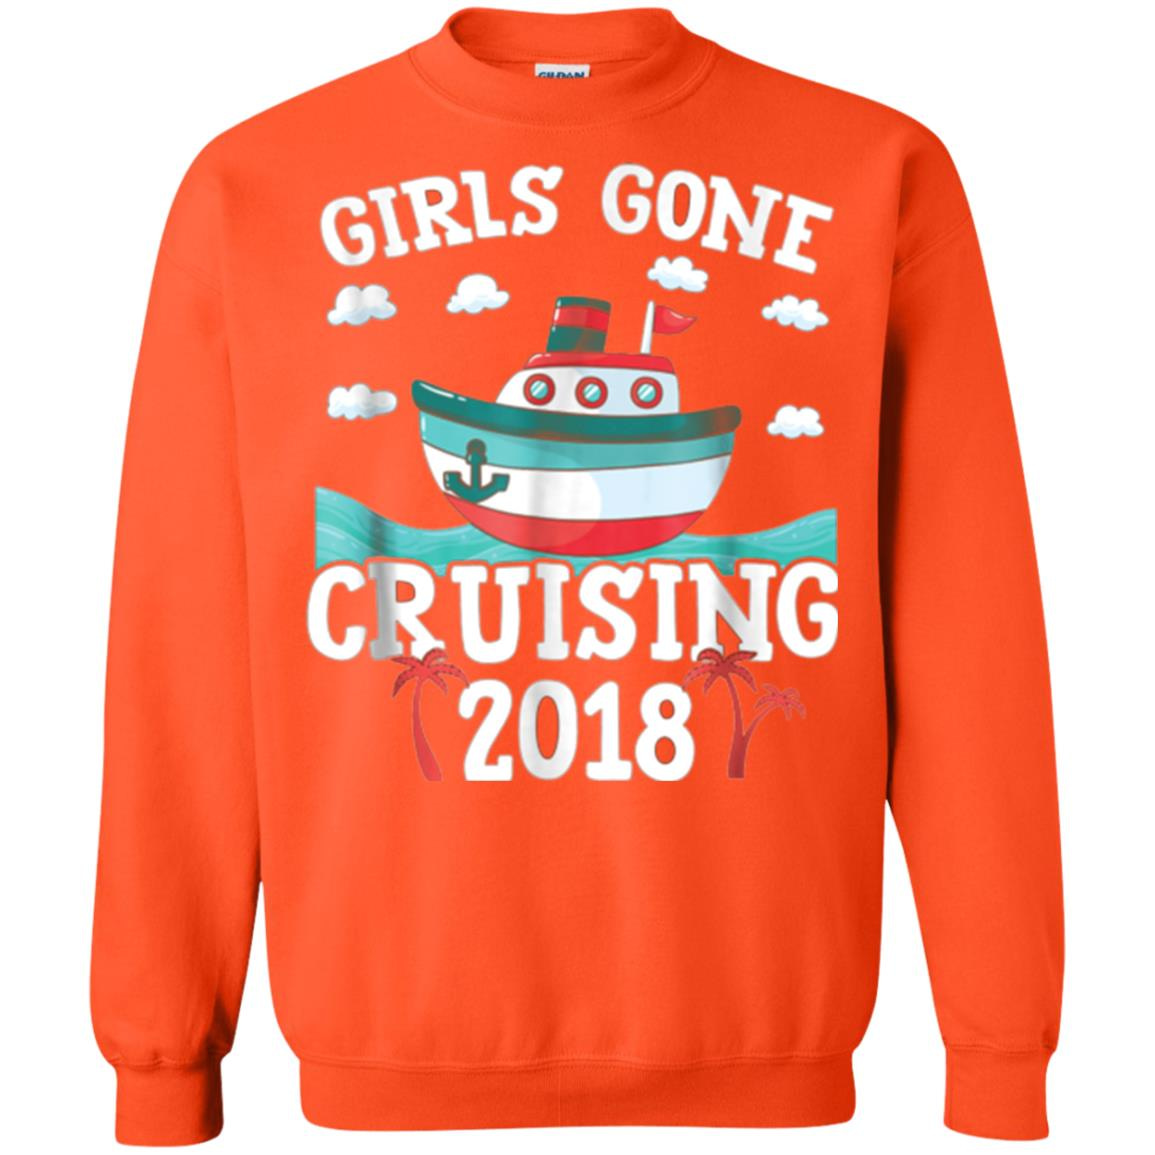 Inktee Store - Girls Gone Cruising 2018 Funny Cruise Trip Vacation Sweatshirt Image